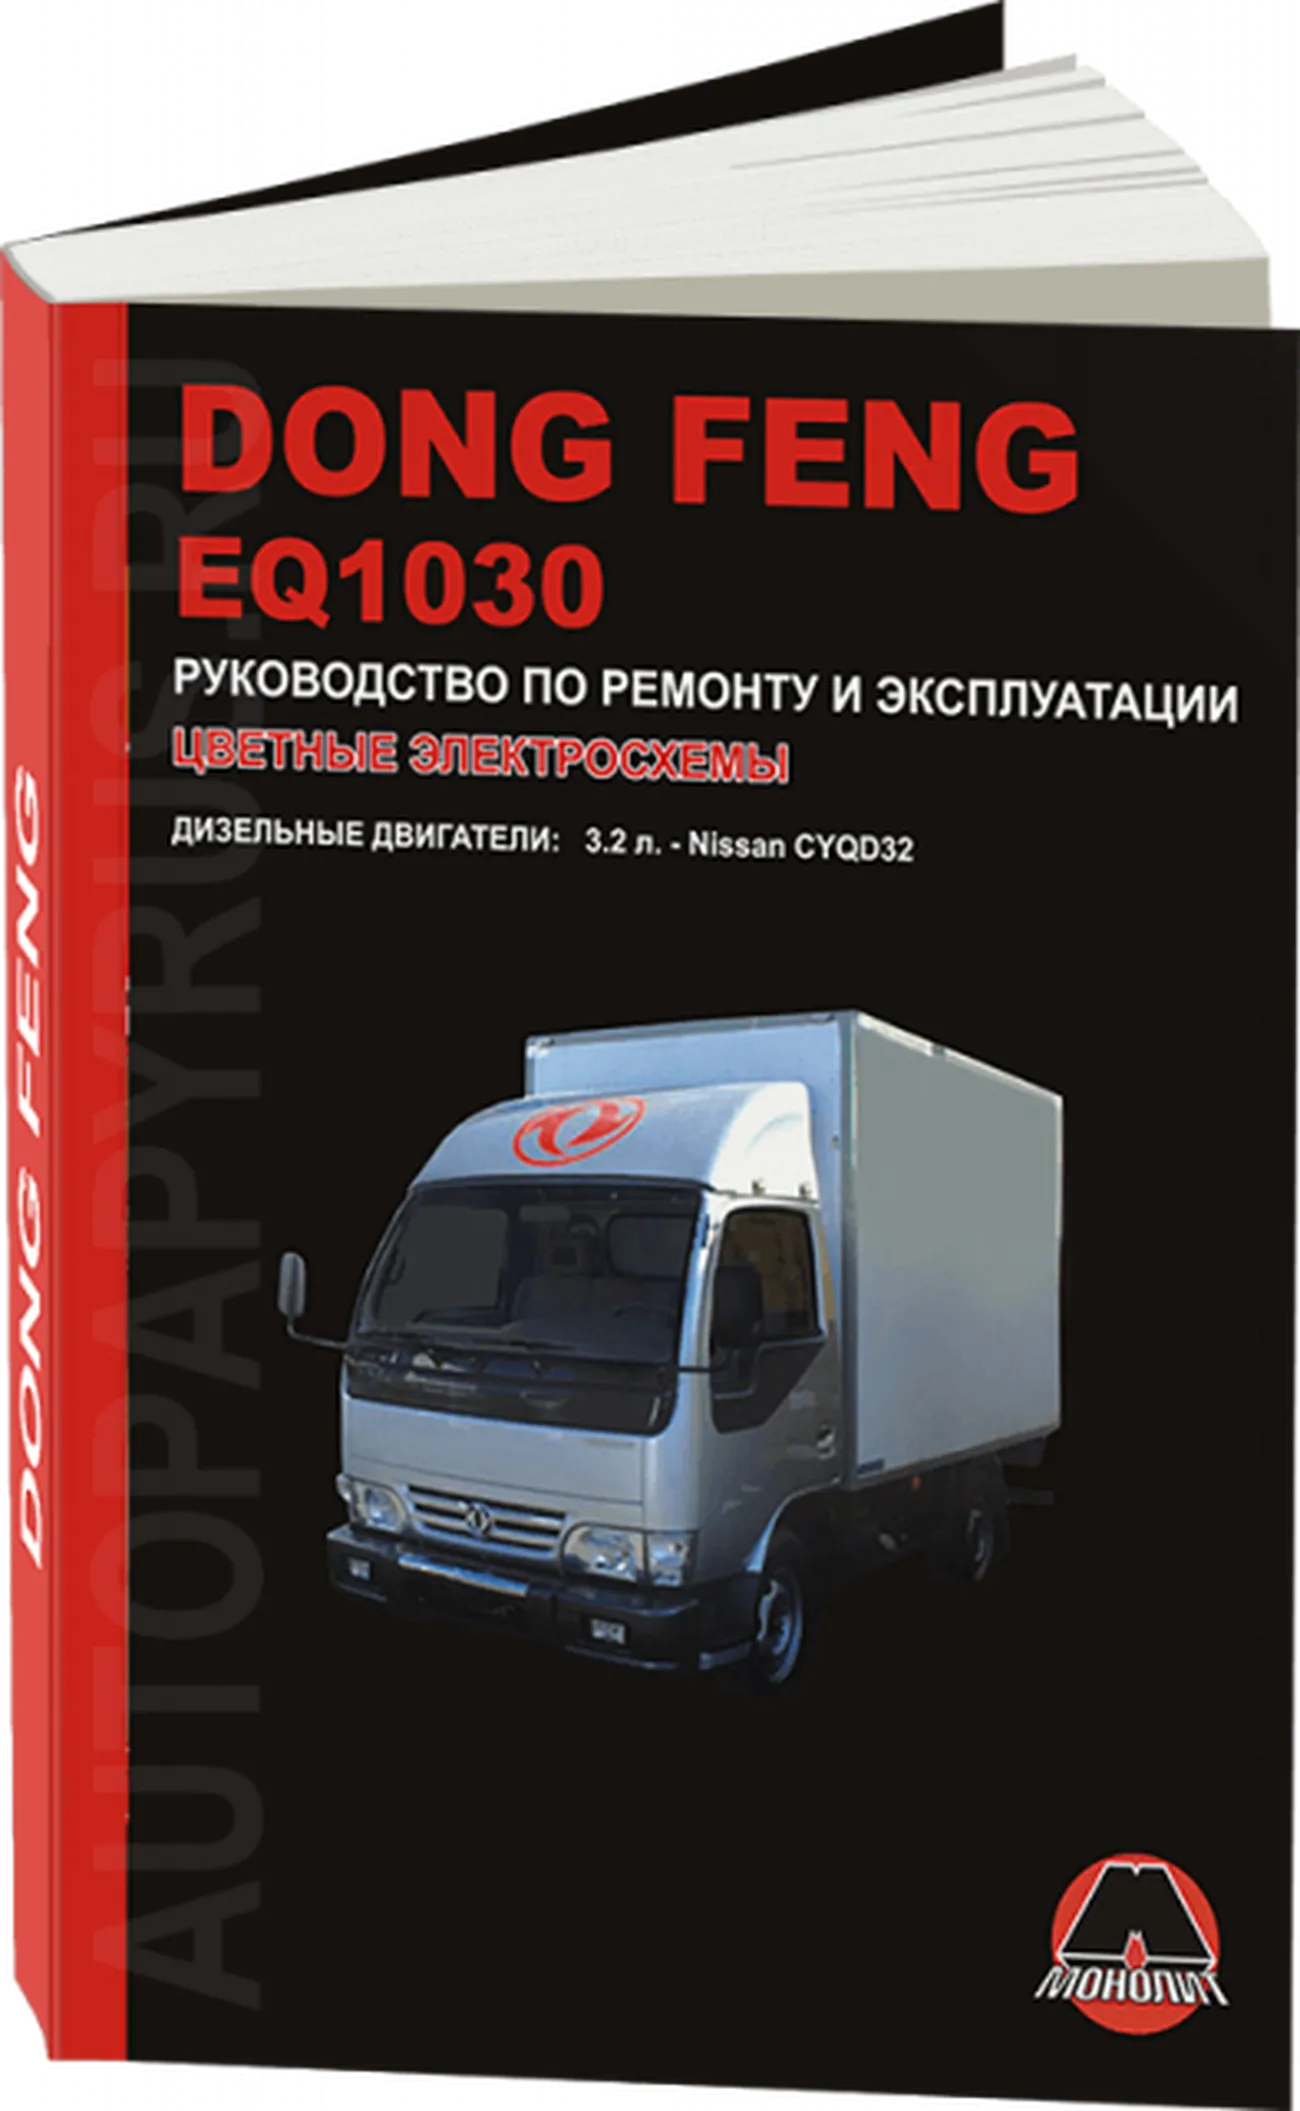 Книга: DONG FENG EQ1030 (д), рем., экспл., то | Монолит